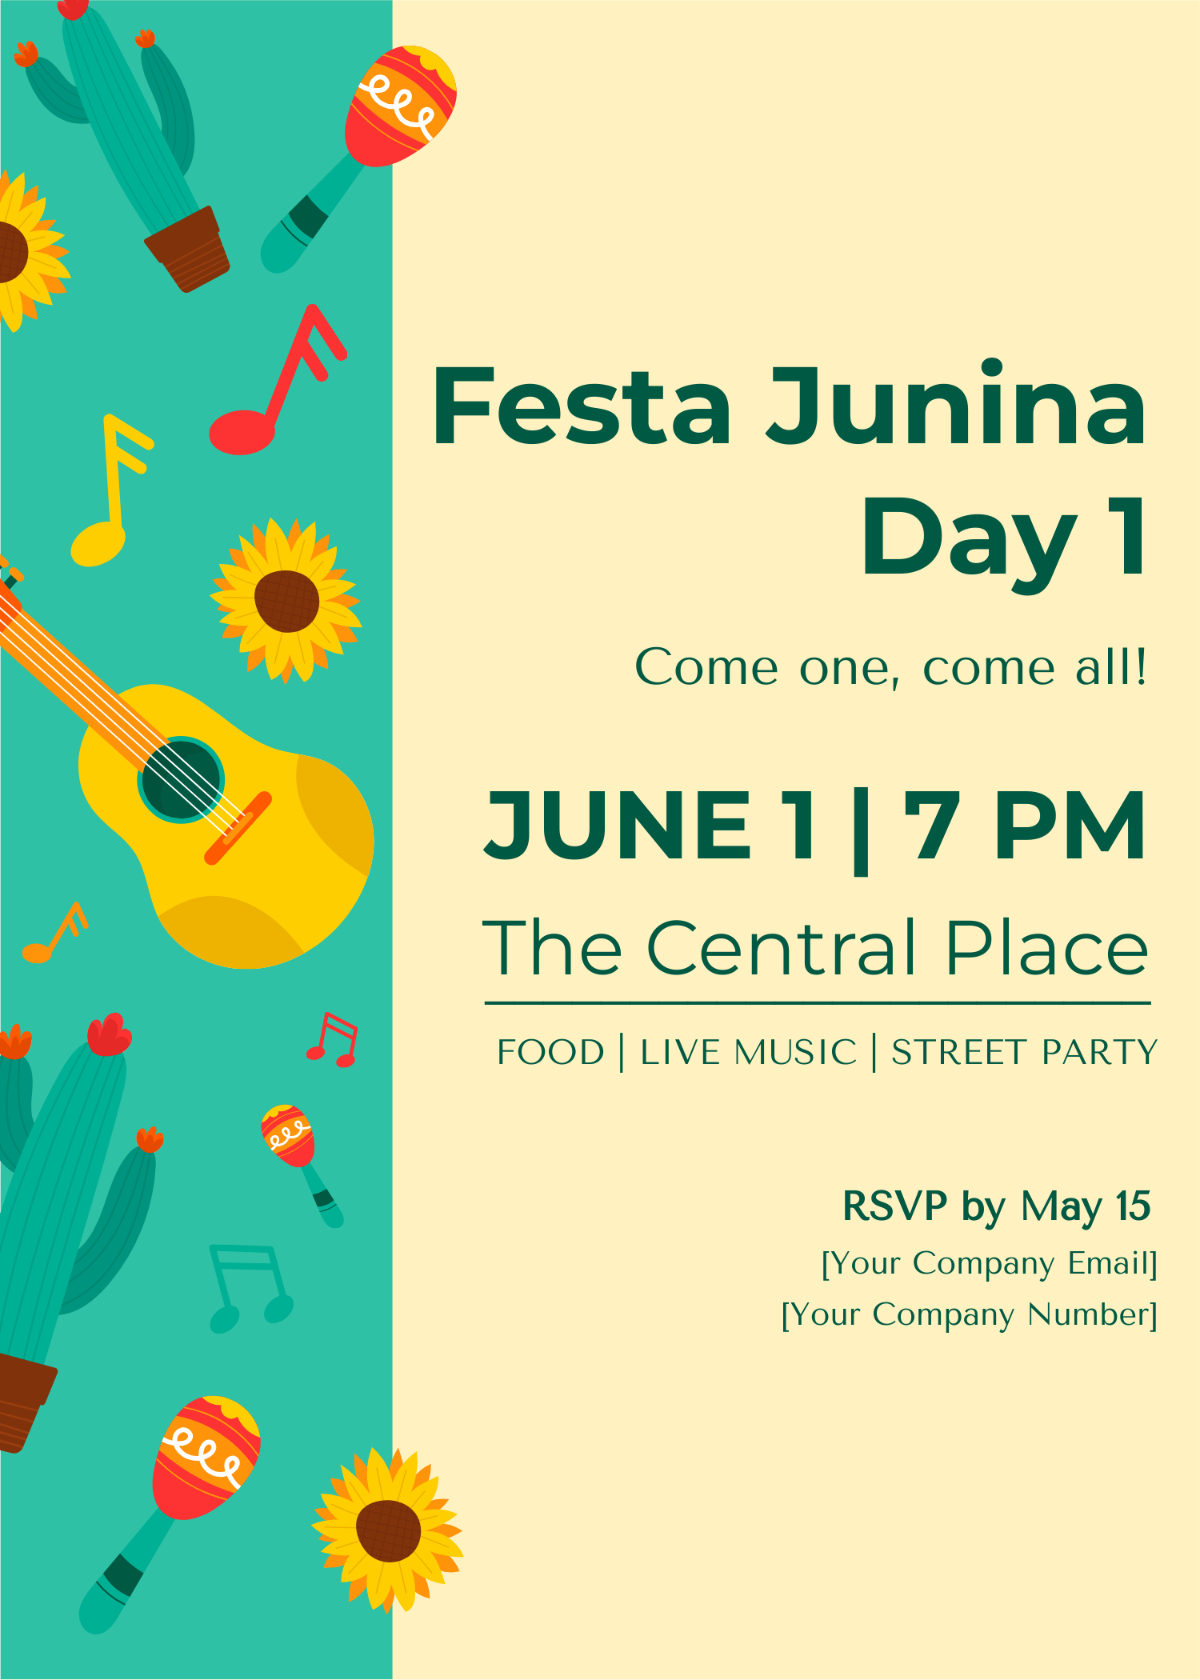 Free Festa Junina Poster Invitation Template